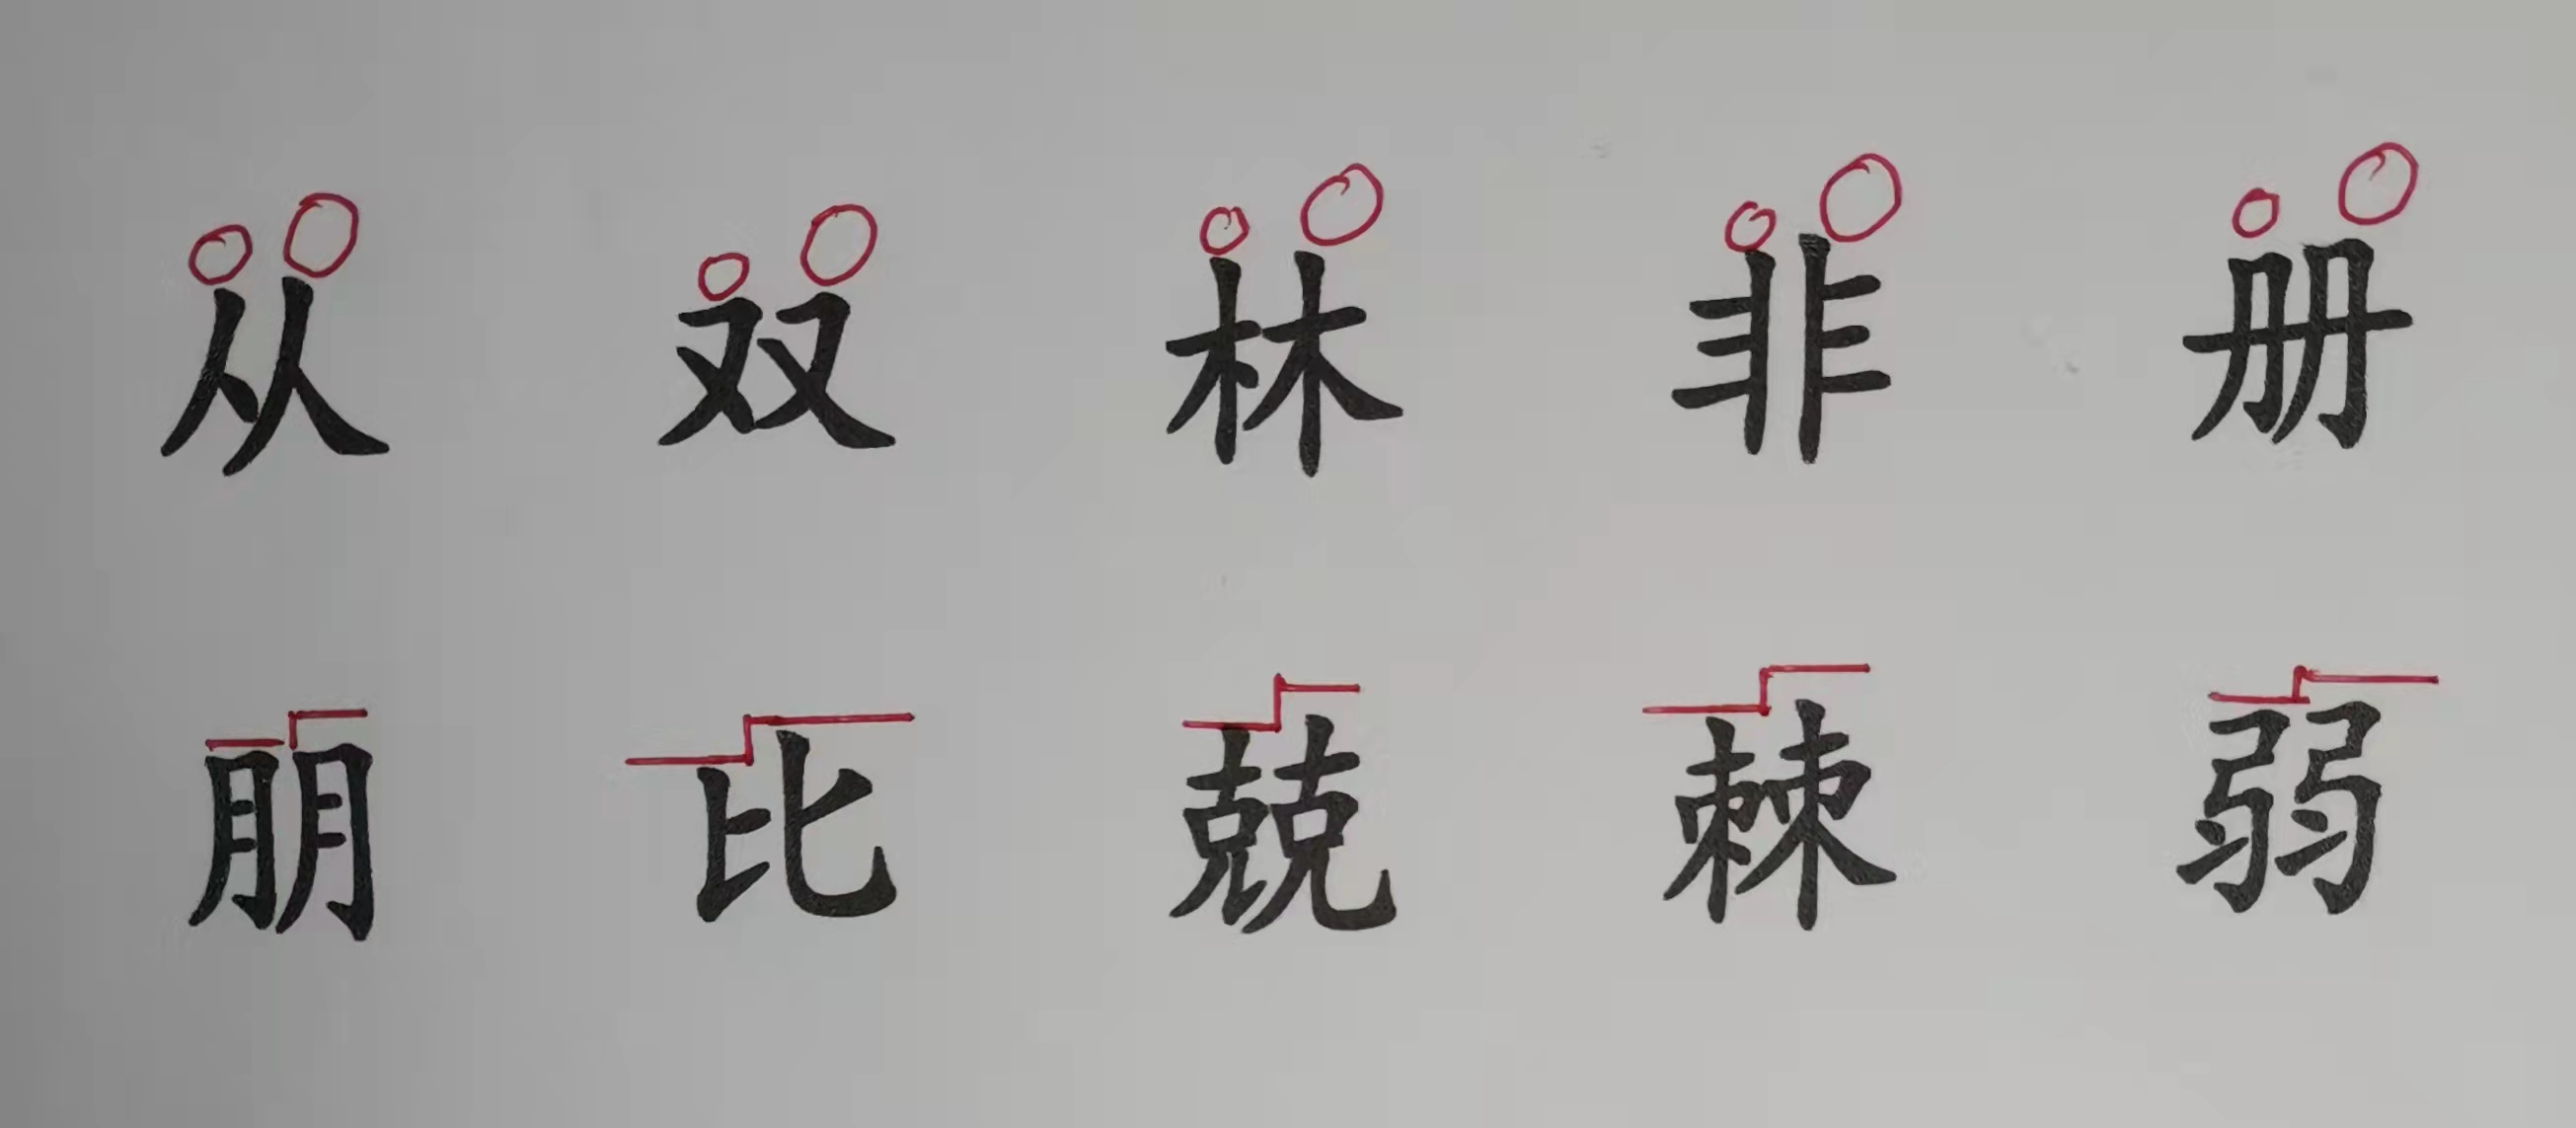 左右,上下,三角部件相同的汉字书写技巧